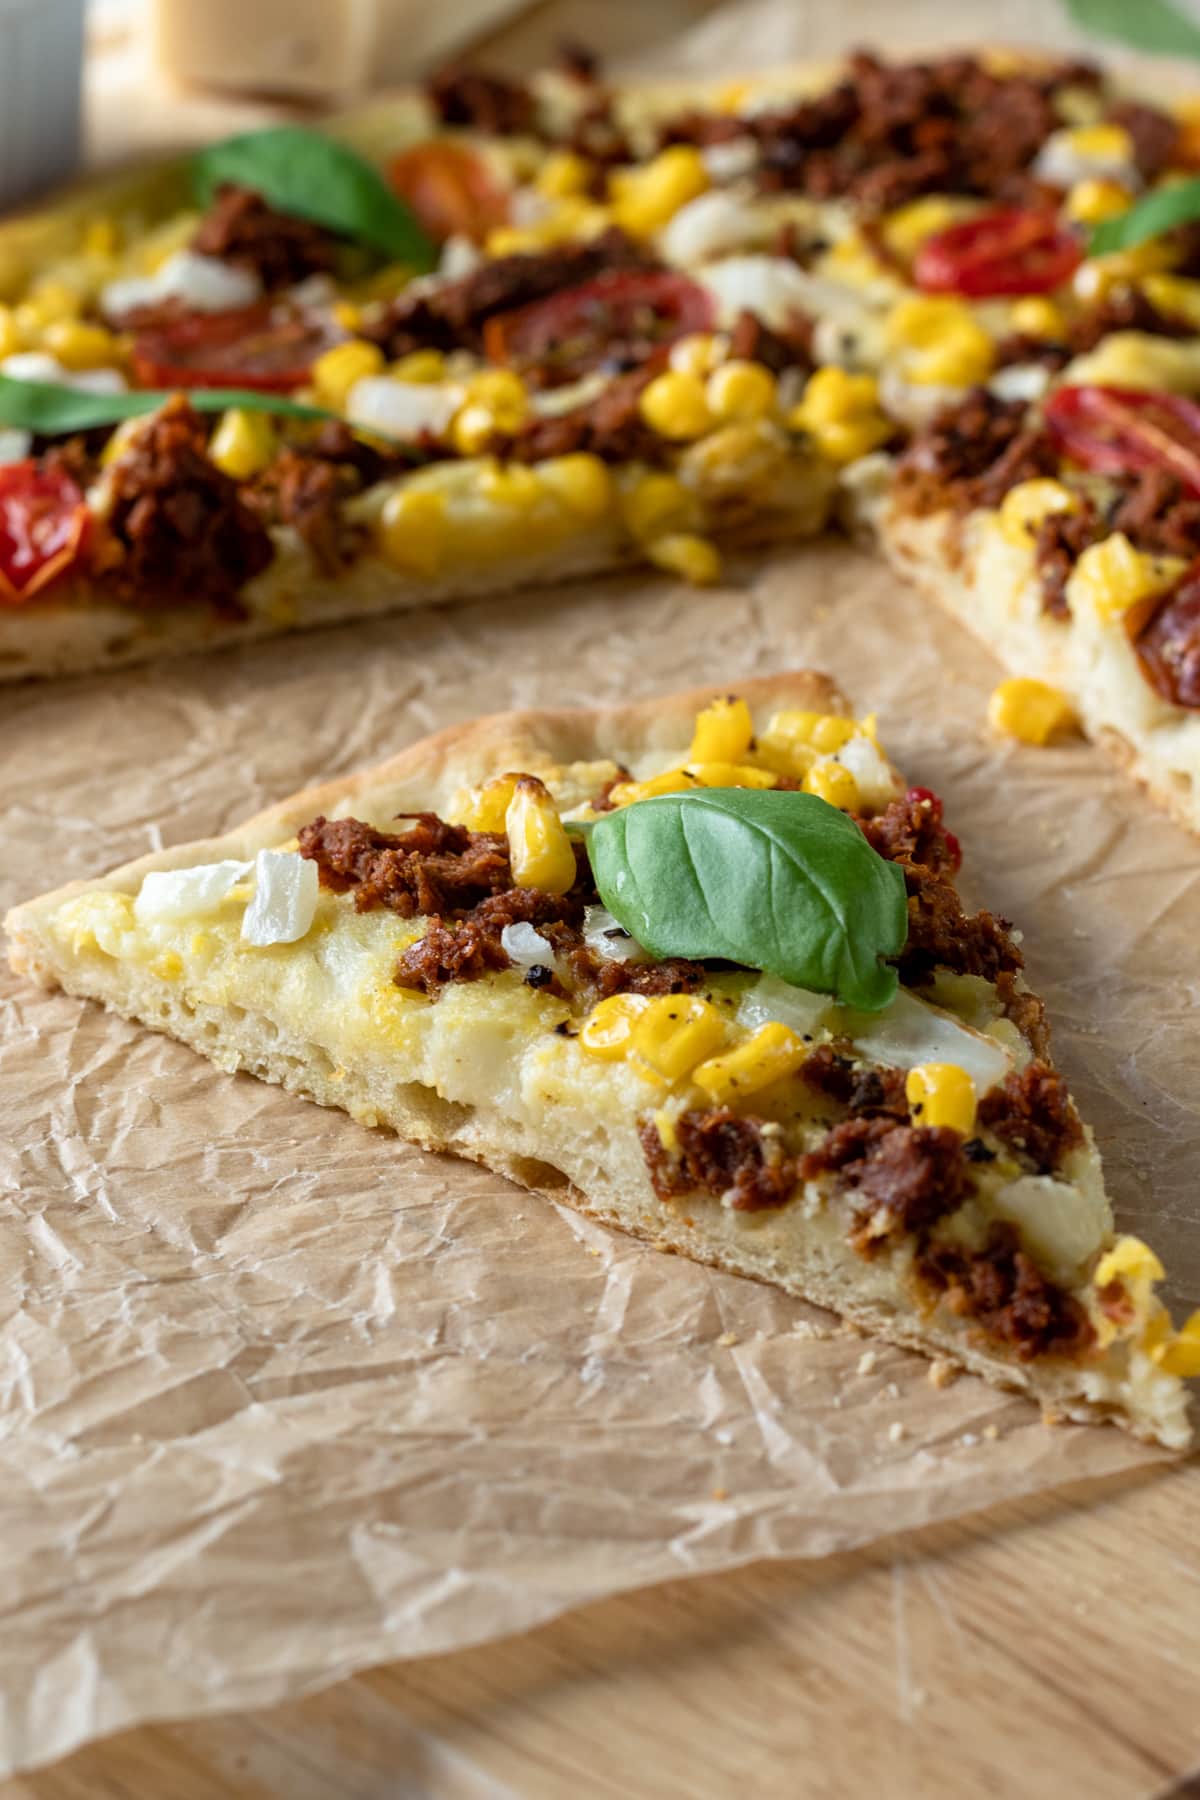 side view showing texture of crisp vegan pizza crust.